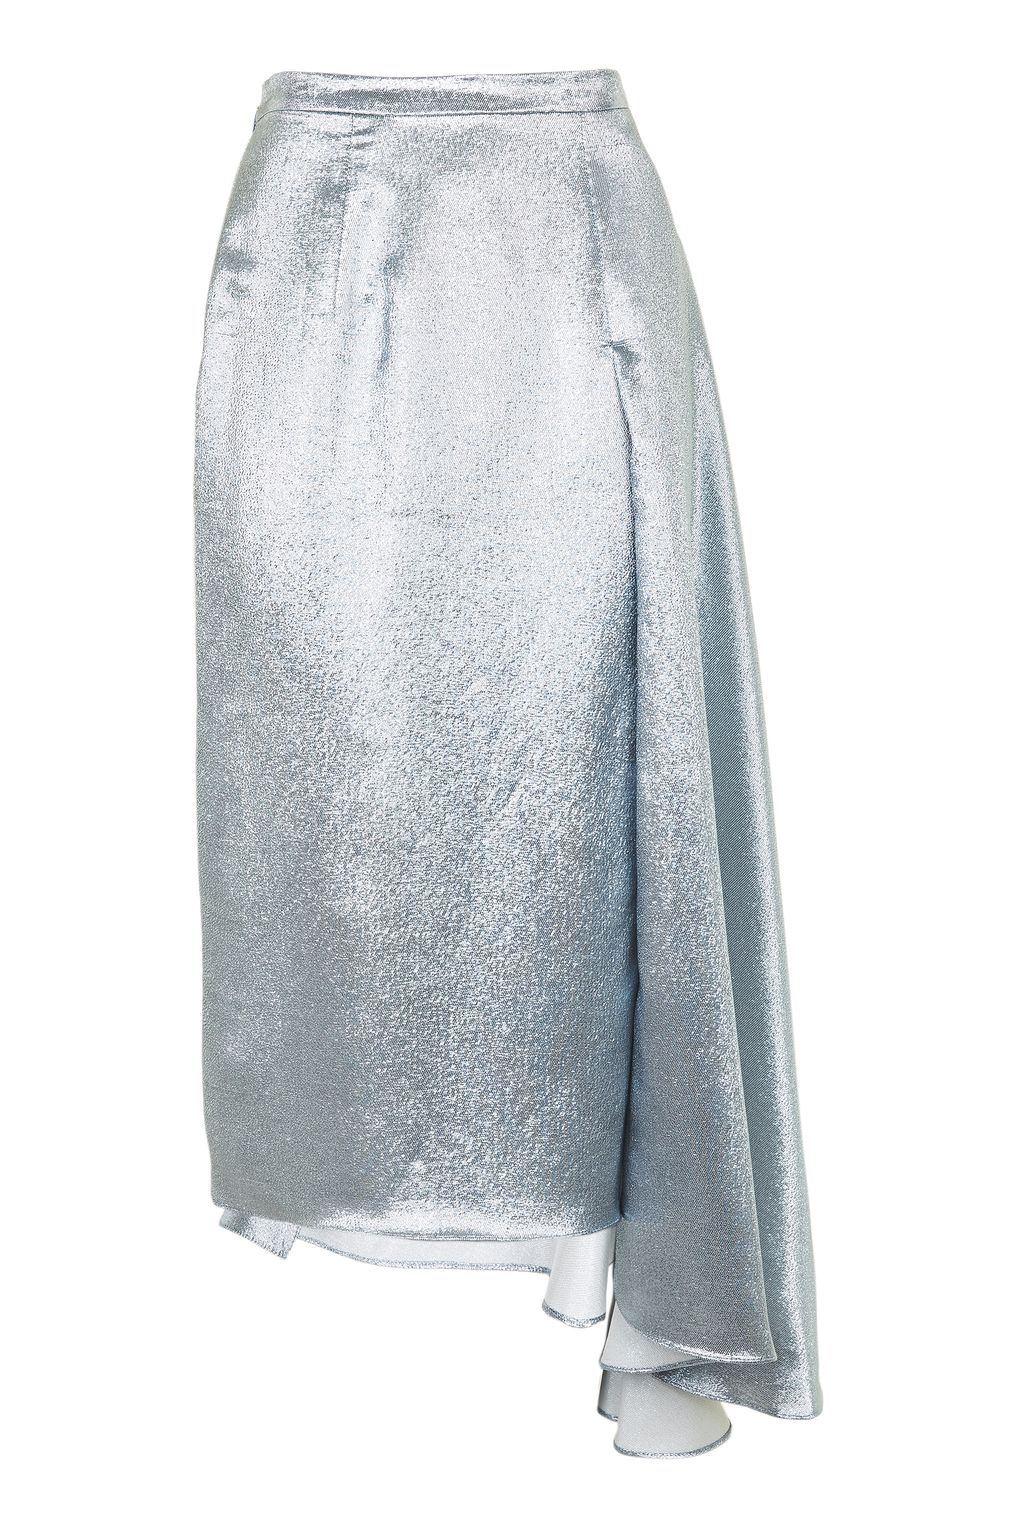 TOPSHOP Lame Asymmetric Skirt by Boutique £95.00 topshop.com